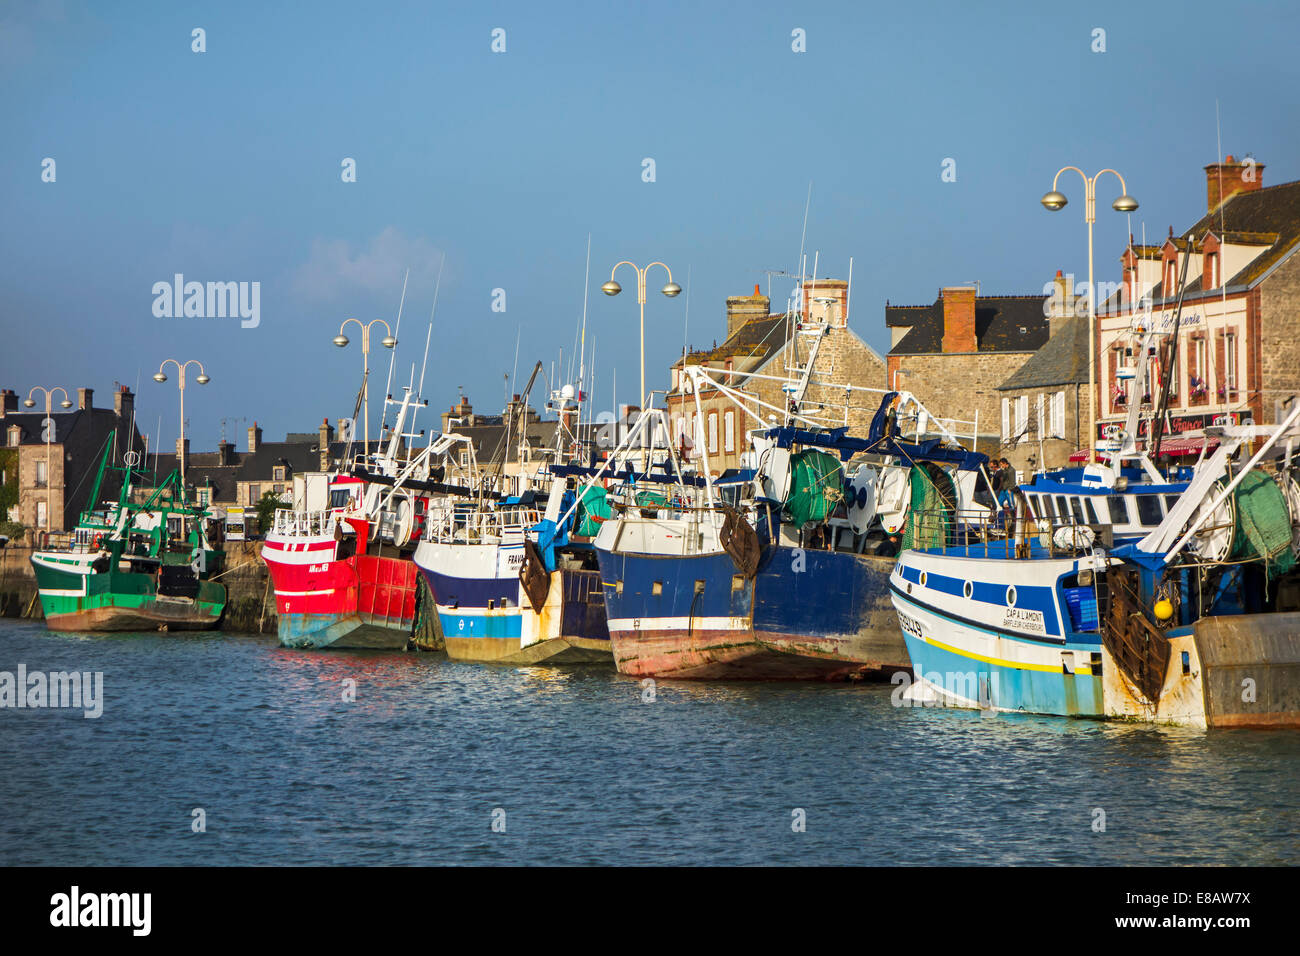 Les chalutiers de pêche colorés / les chalutiers à quai dans le port de Barfleur, Basse-normandie, France Banque D'Images